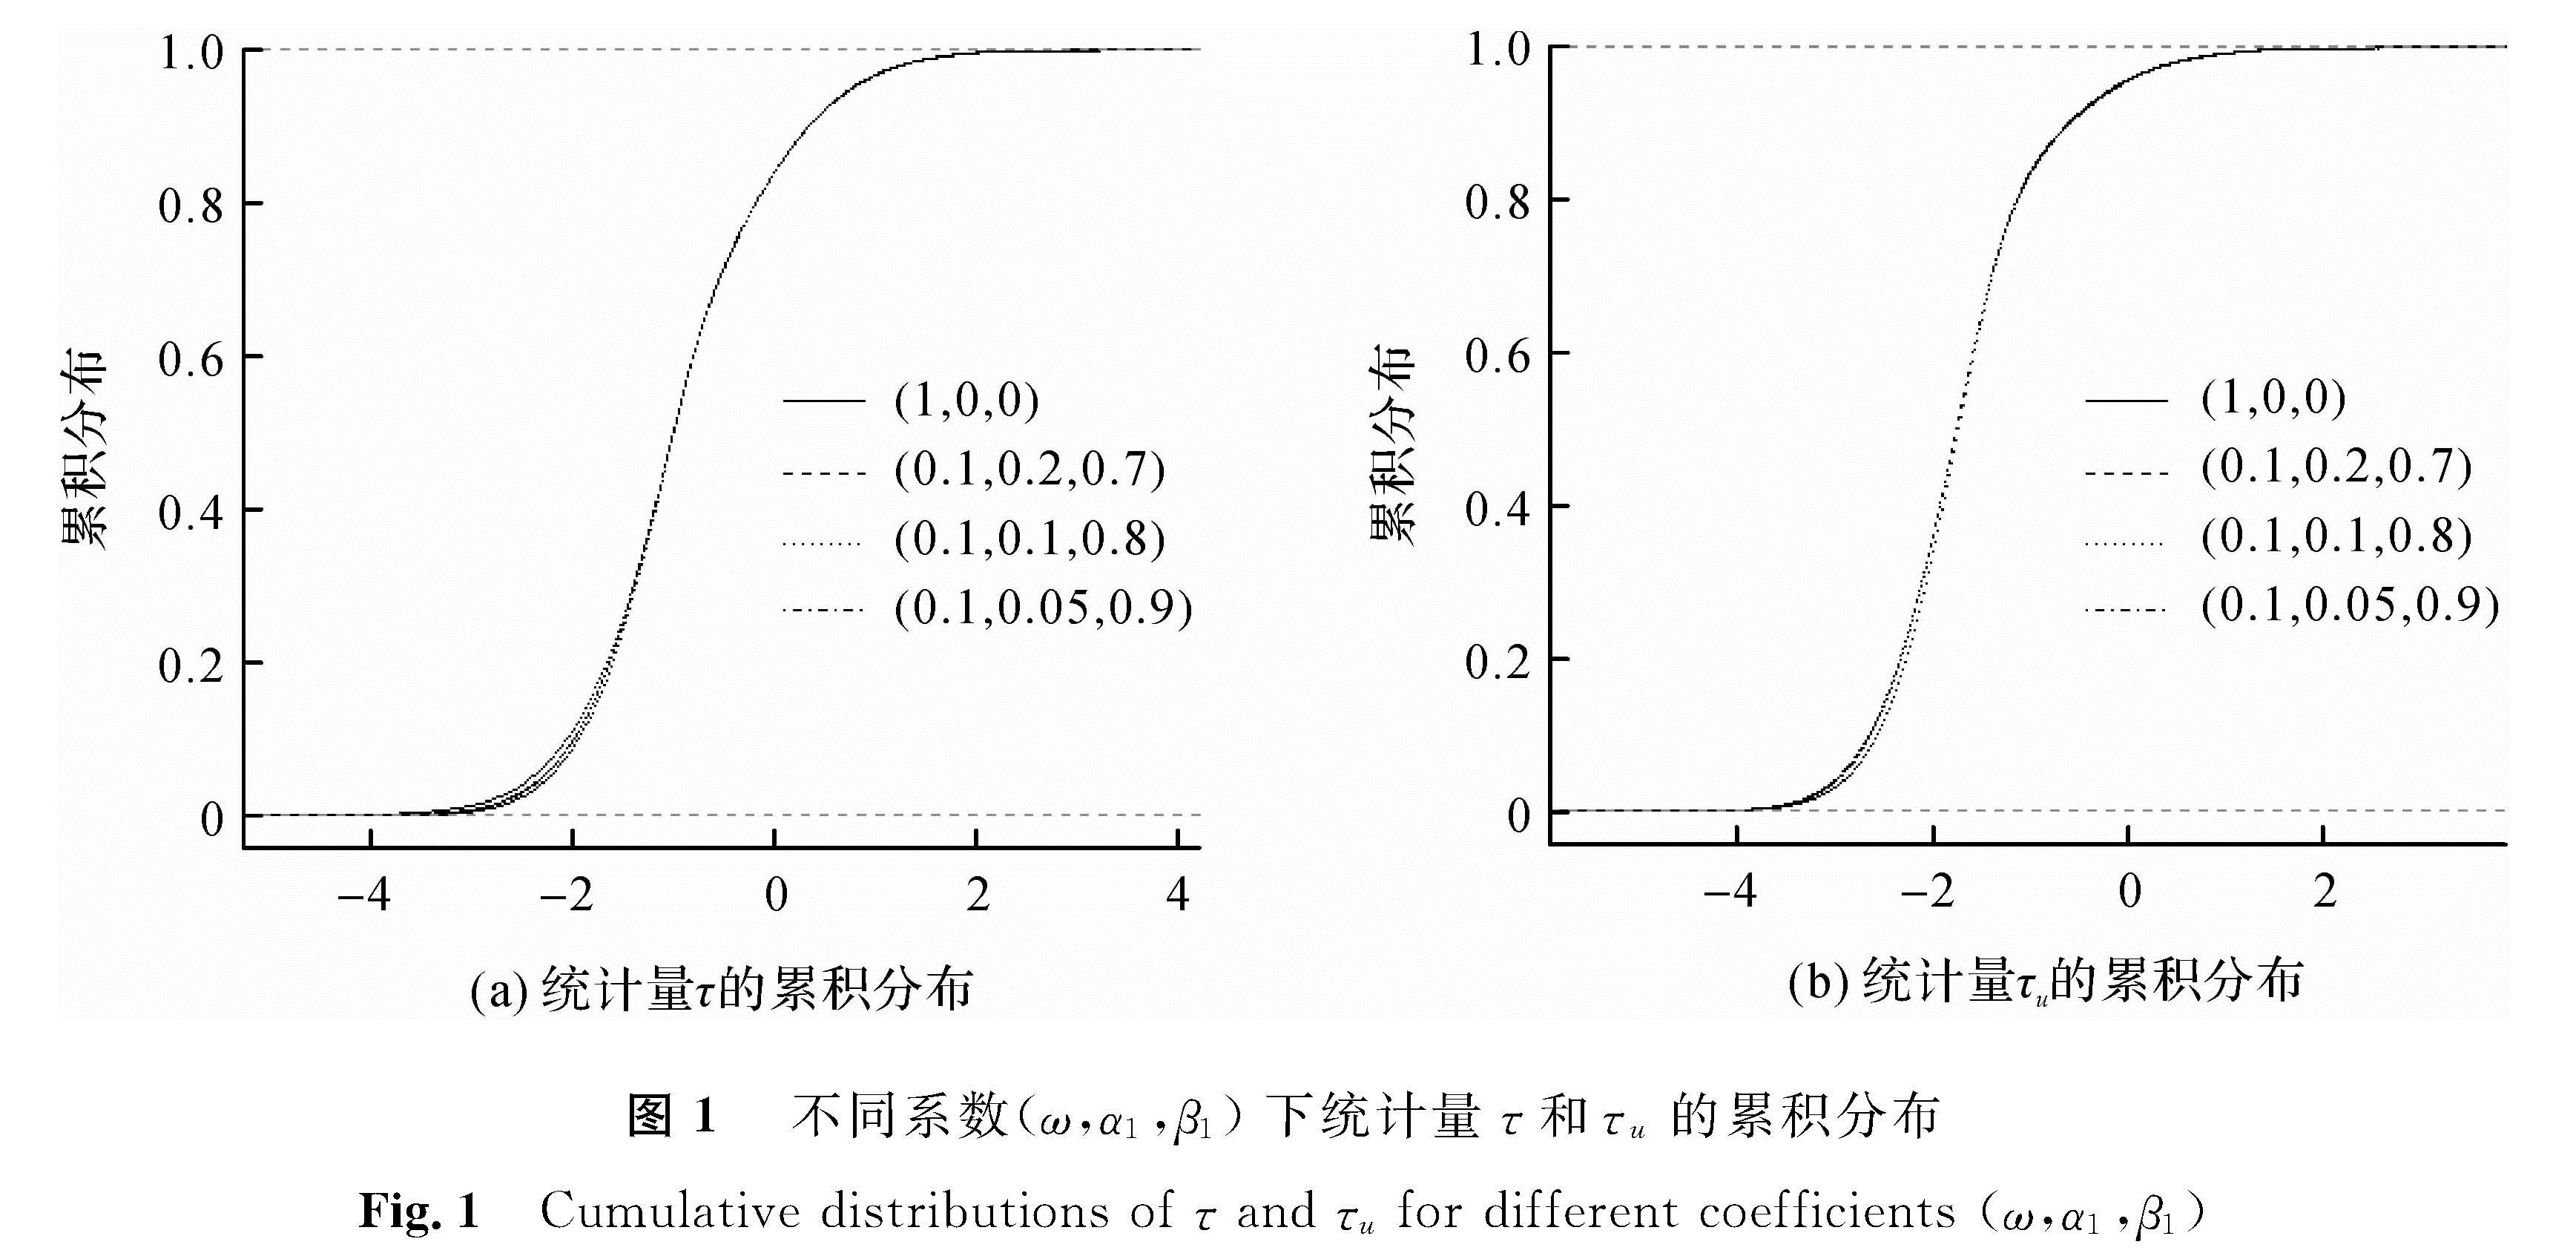 图1 不同系数(ω,α1,β1)下统计量τ和τu的累积分布<br/>Fig.1 Cumulative distributions of τ and τu for different coefficients (ω,α1,β1)